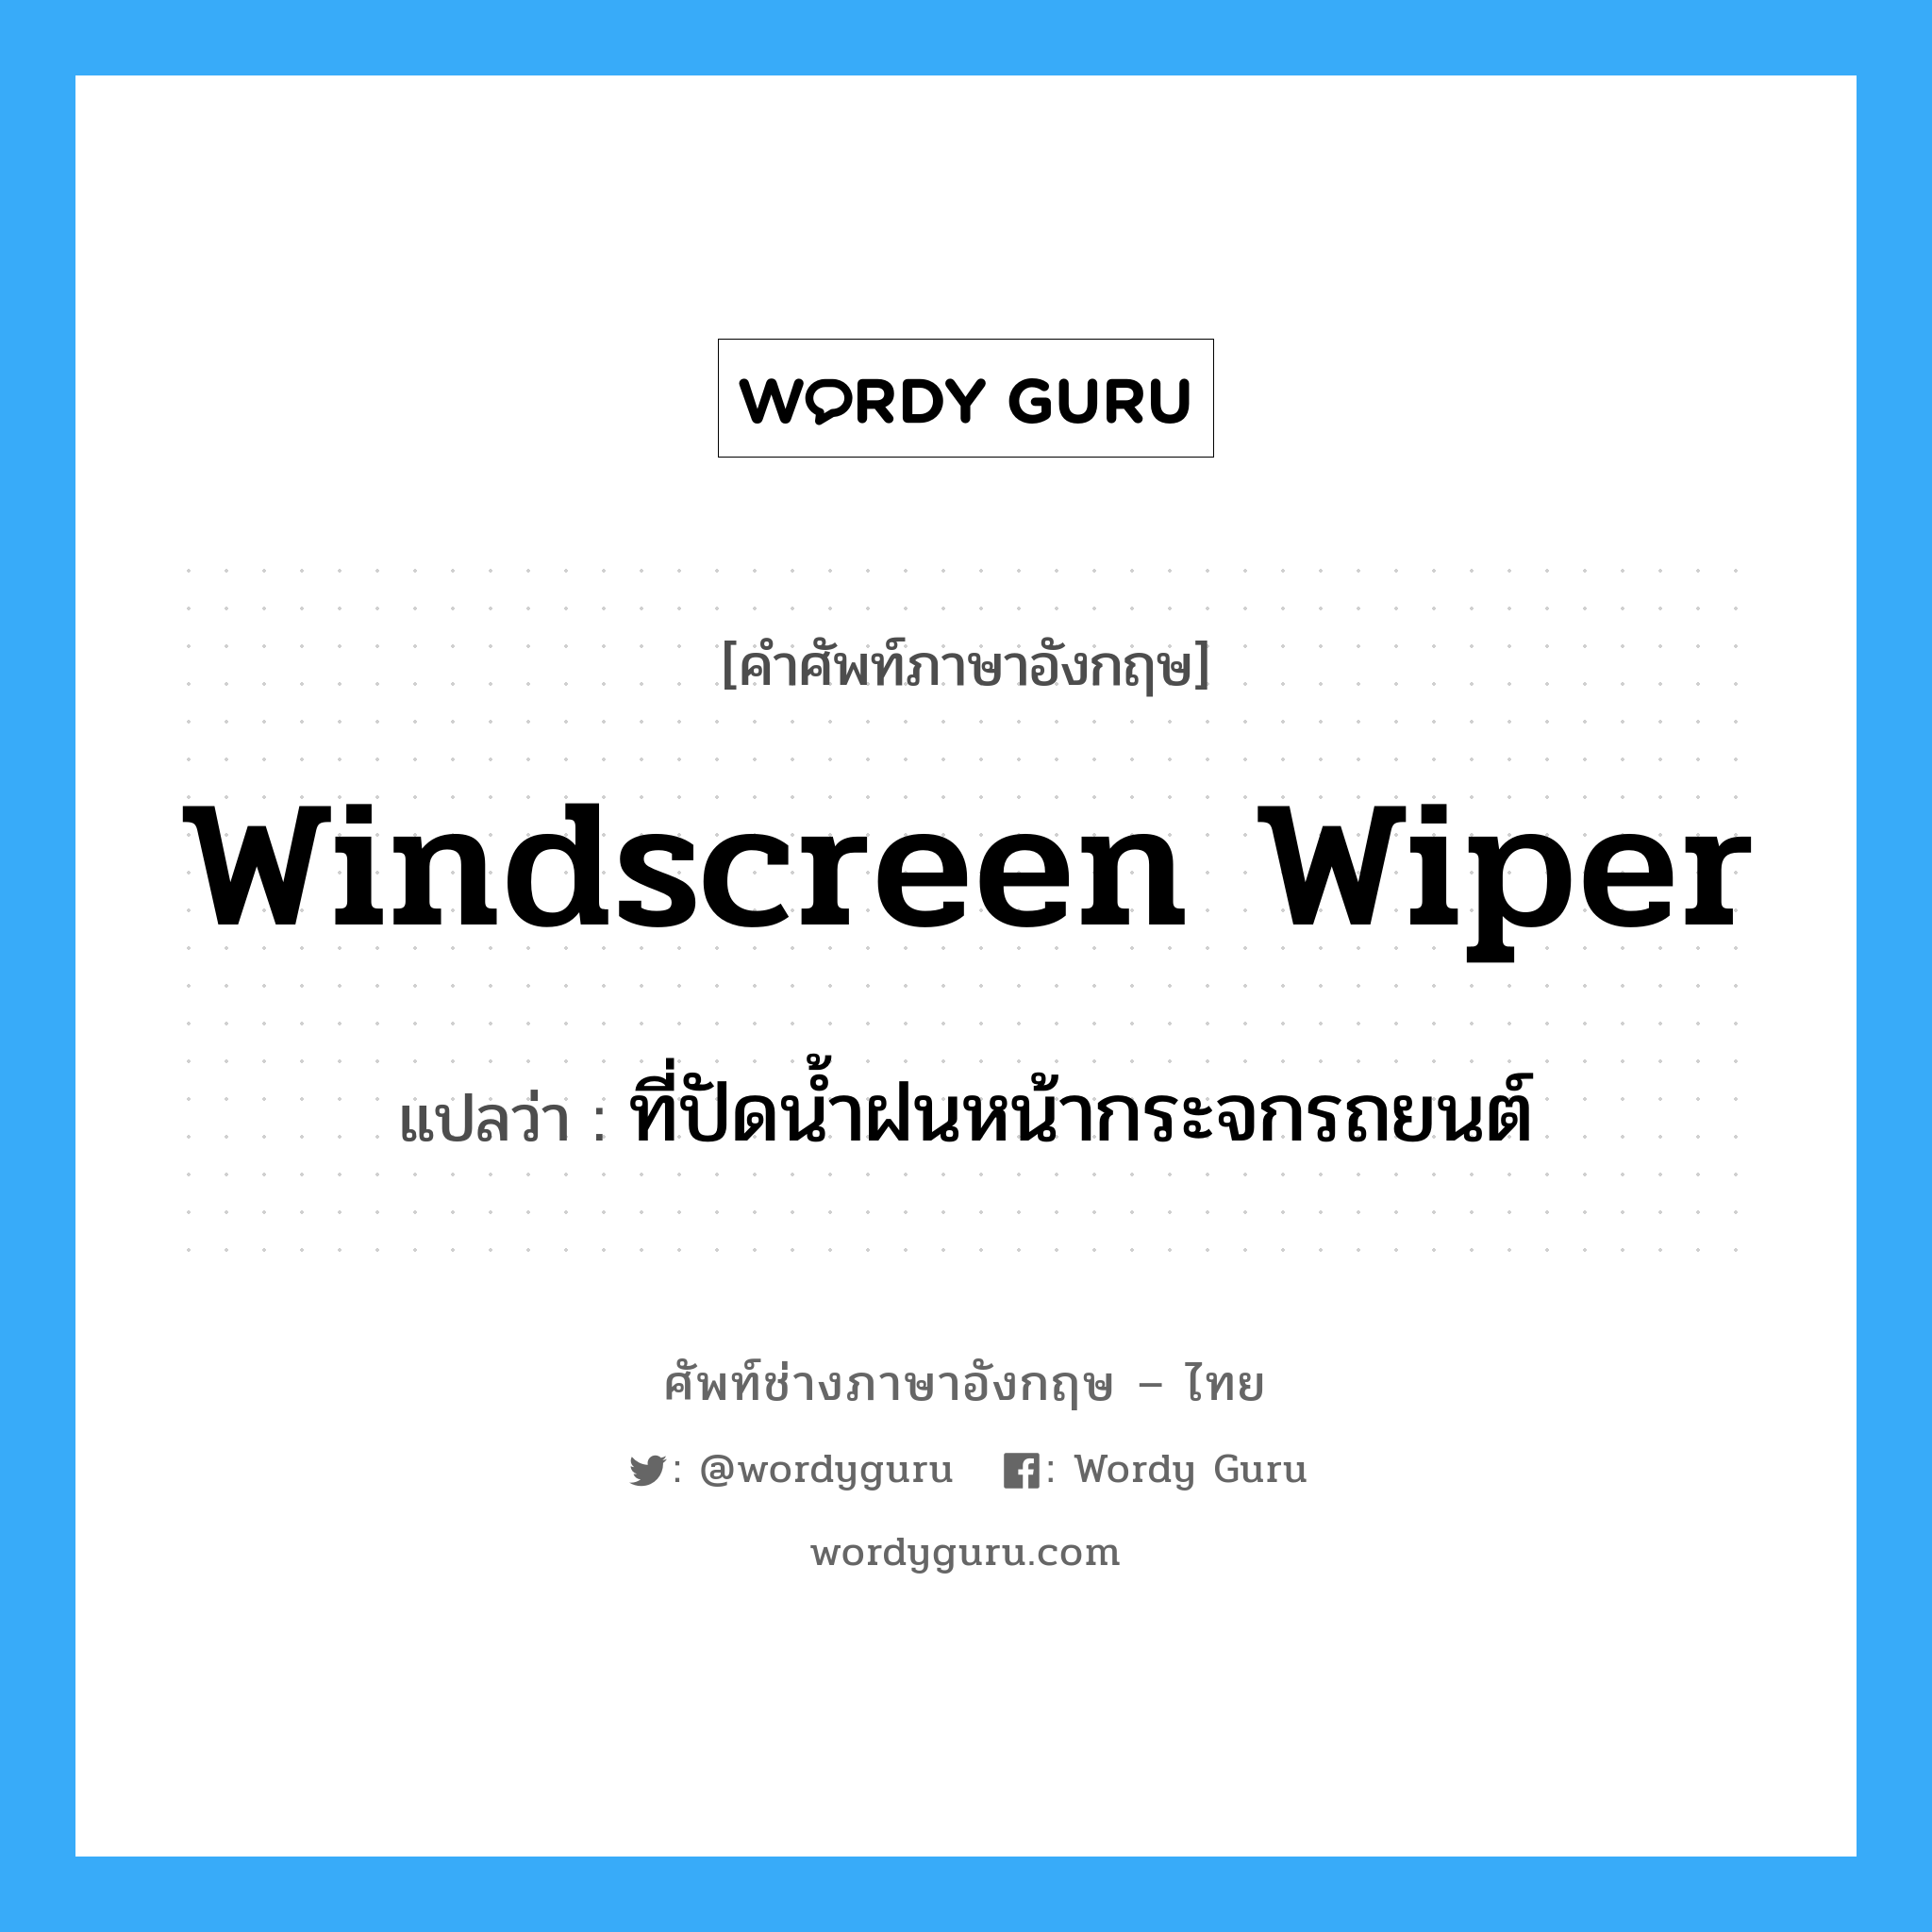 windscreen wiper แปลว่า?, คำศัพท์ช่างภาษาอังกฤษ - ไทย windscreen wiper คำศัพท์ภาษาอังกฤษ windscreen wiper แปลว่า ที่ปัดน้ำฝนหน้ากระจกรถยนต์